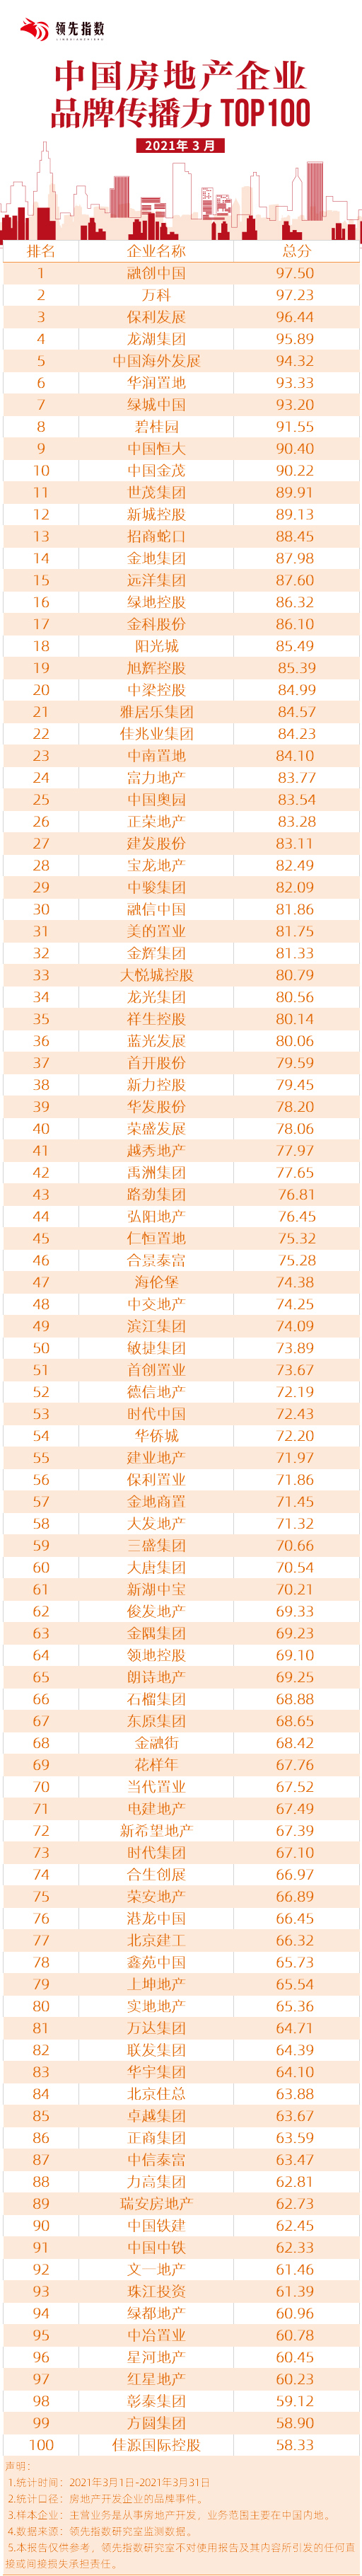 领先指数|2021年3月中国房地产企业品牌流传力TOP100-中国网地产